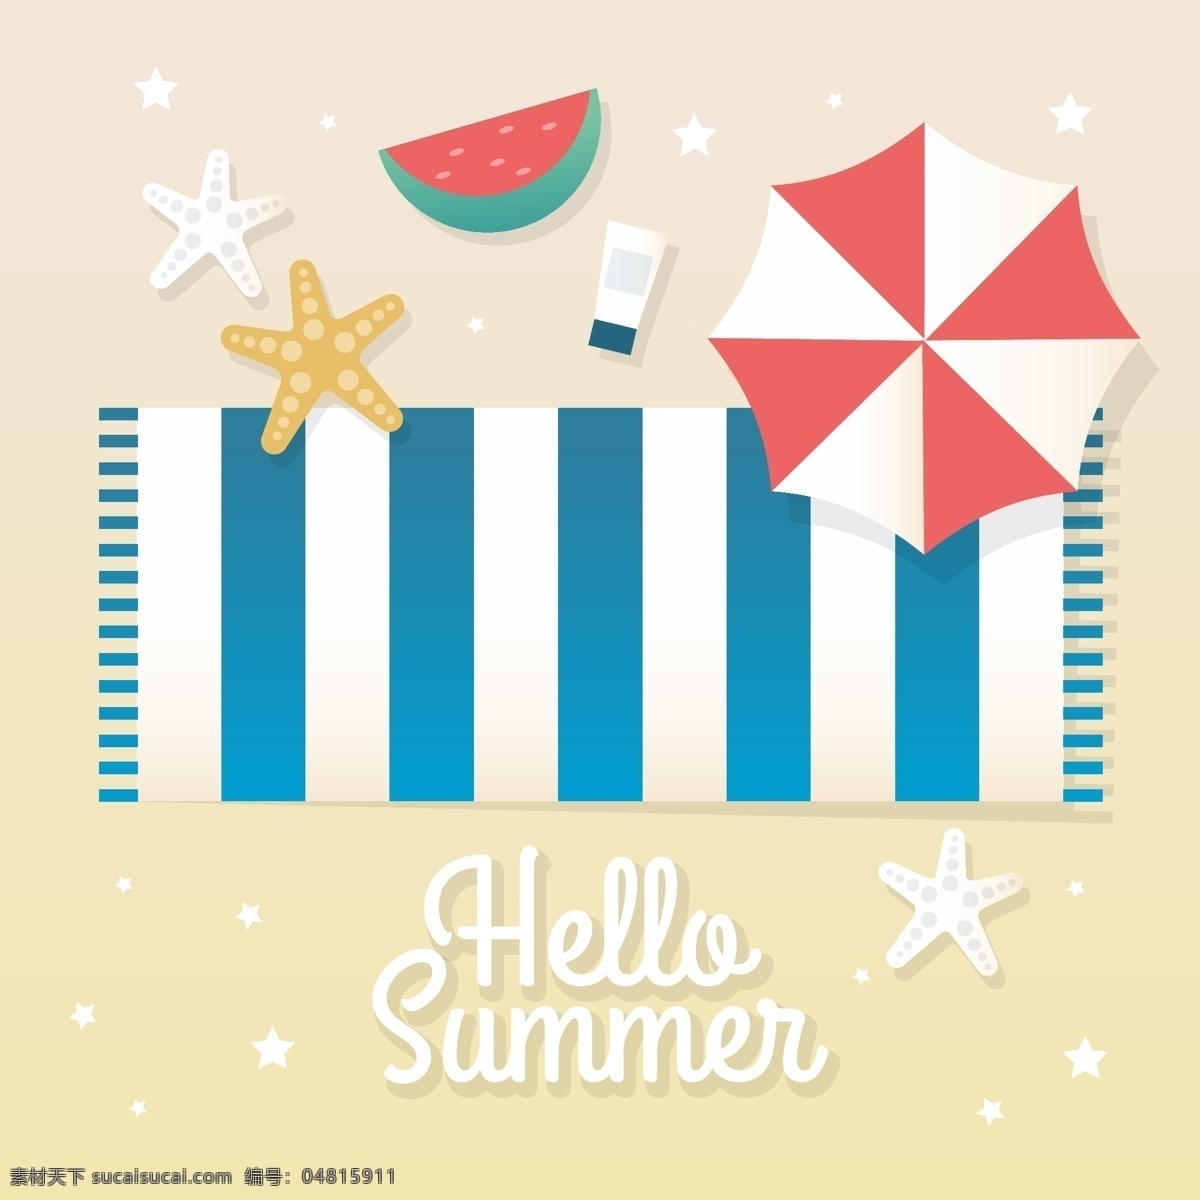 夏季 背景 矢量图 夏日 阳光 海滩 海浪 清凉 清爽 饮料 玩具 雪糕 太阳伞 西瓜 海星